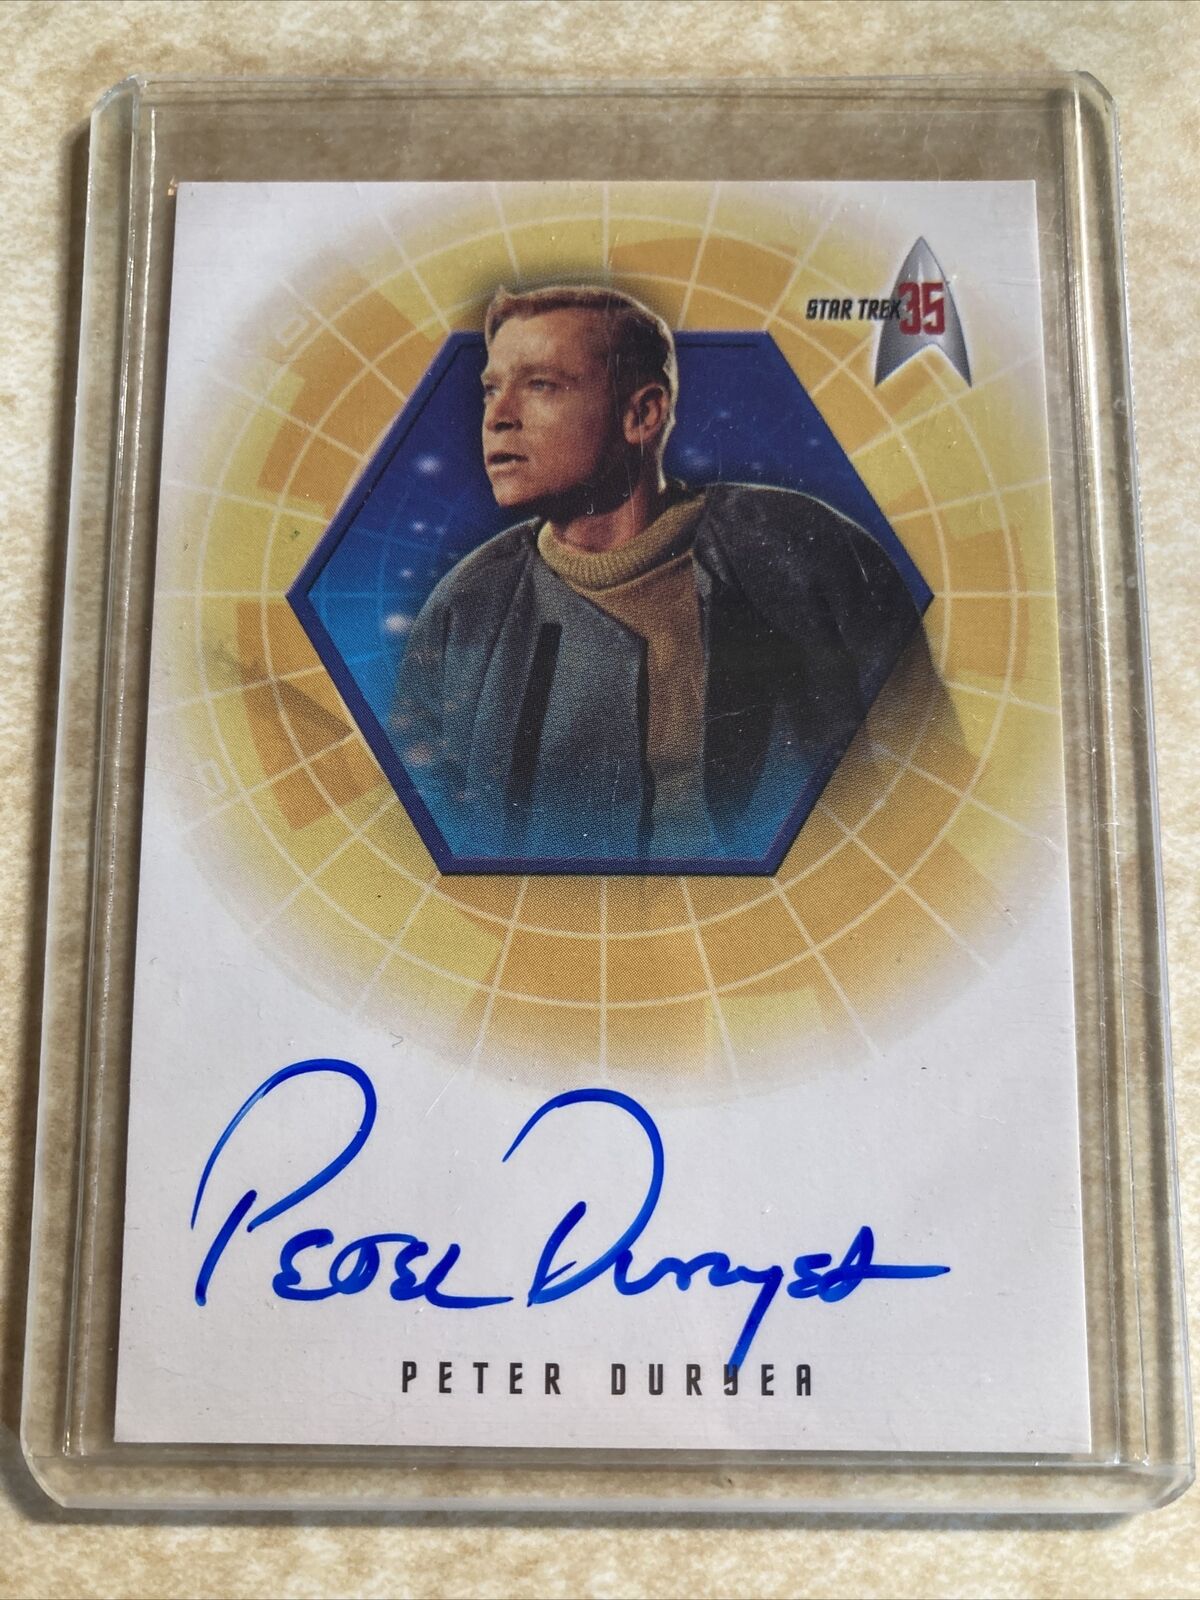 Star Trek 35th Peter Duryea “Jose Tyler” Autograph Card Signed Rittenhouse A32